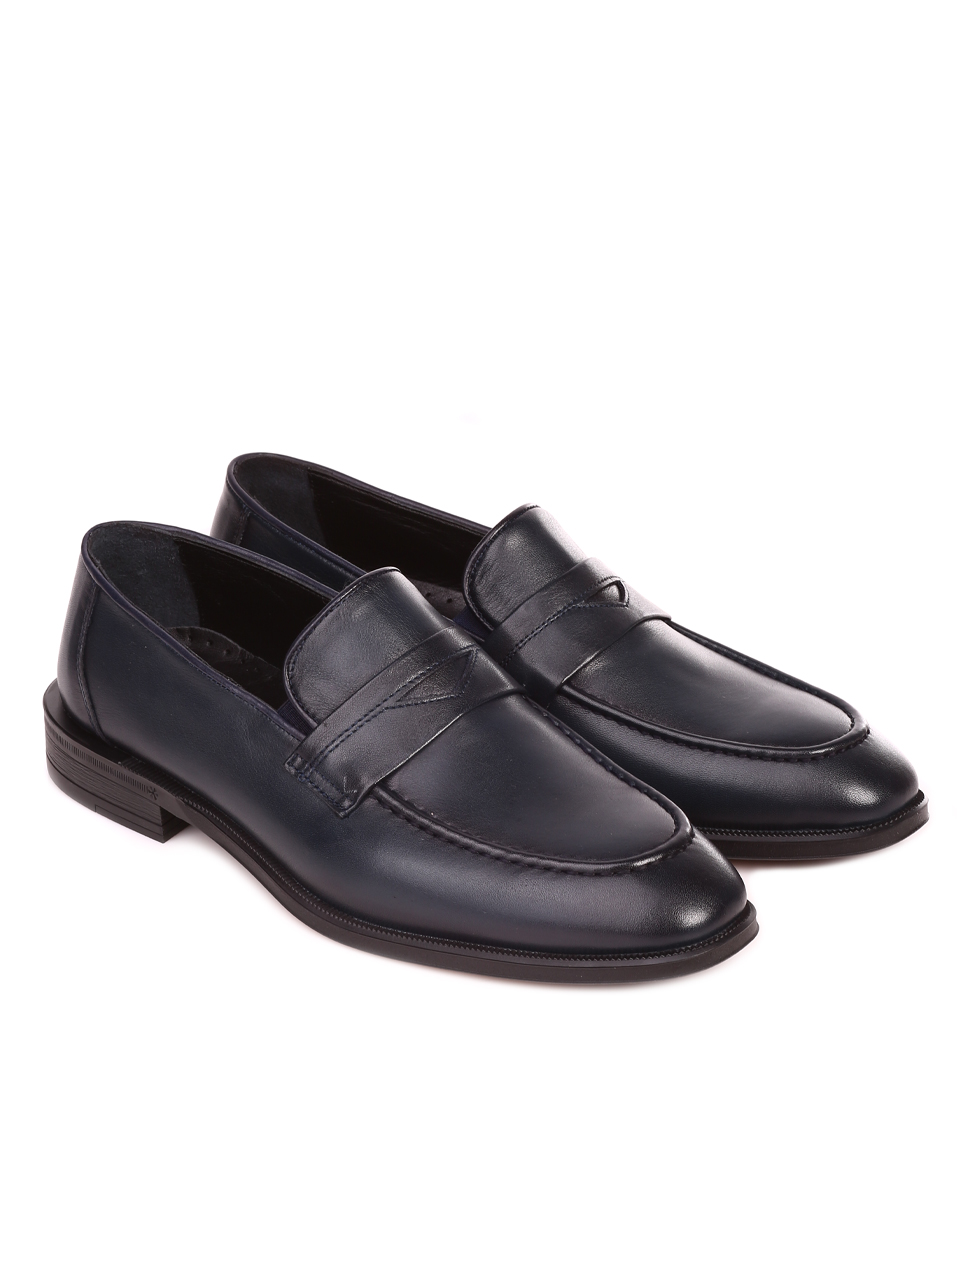 Елегантни мъжки обувки от естествена кожа 7AT-23304 black/navy